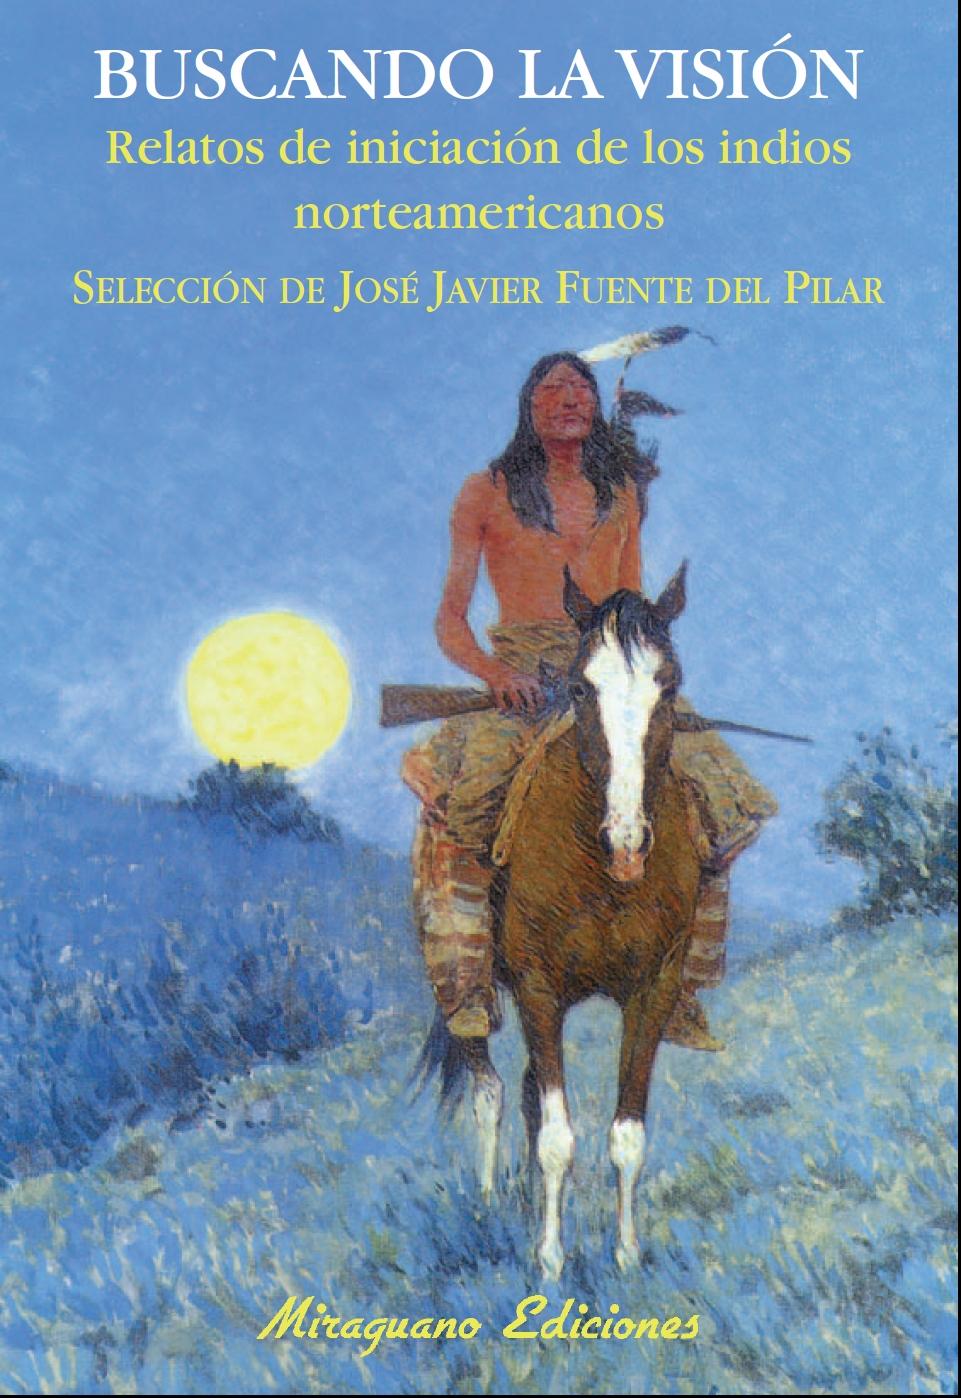 BUSCANDO LA VISIÓN "Relatos de iniciación de los indios norteamericanos". 